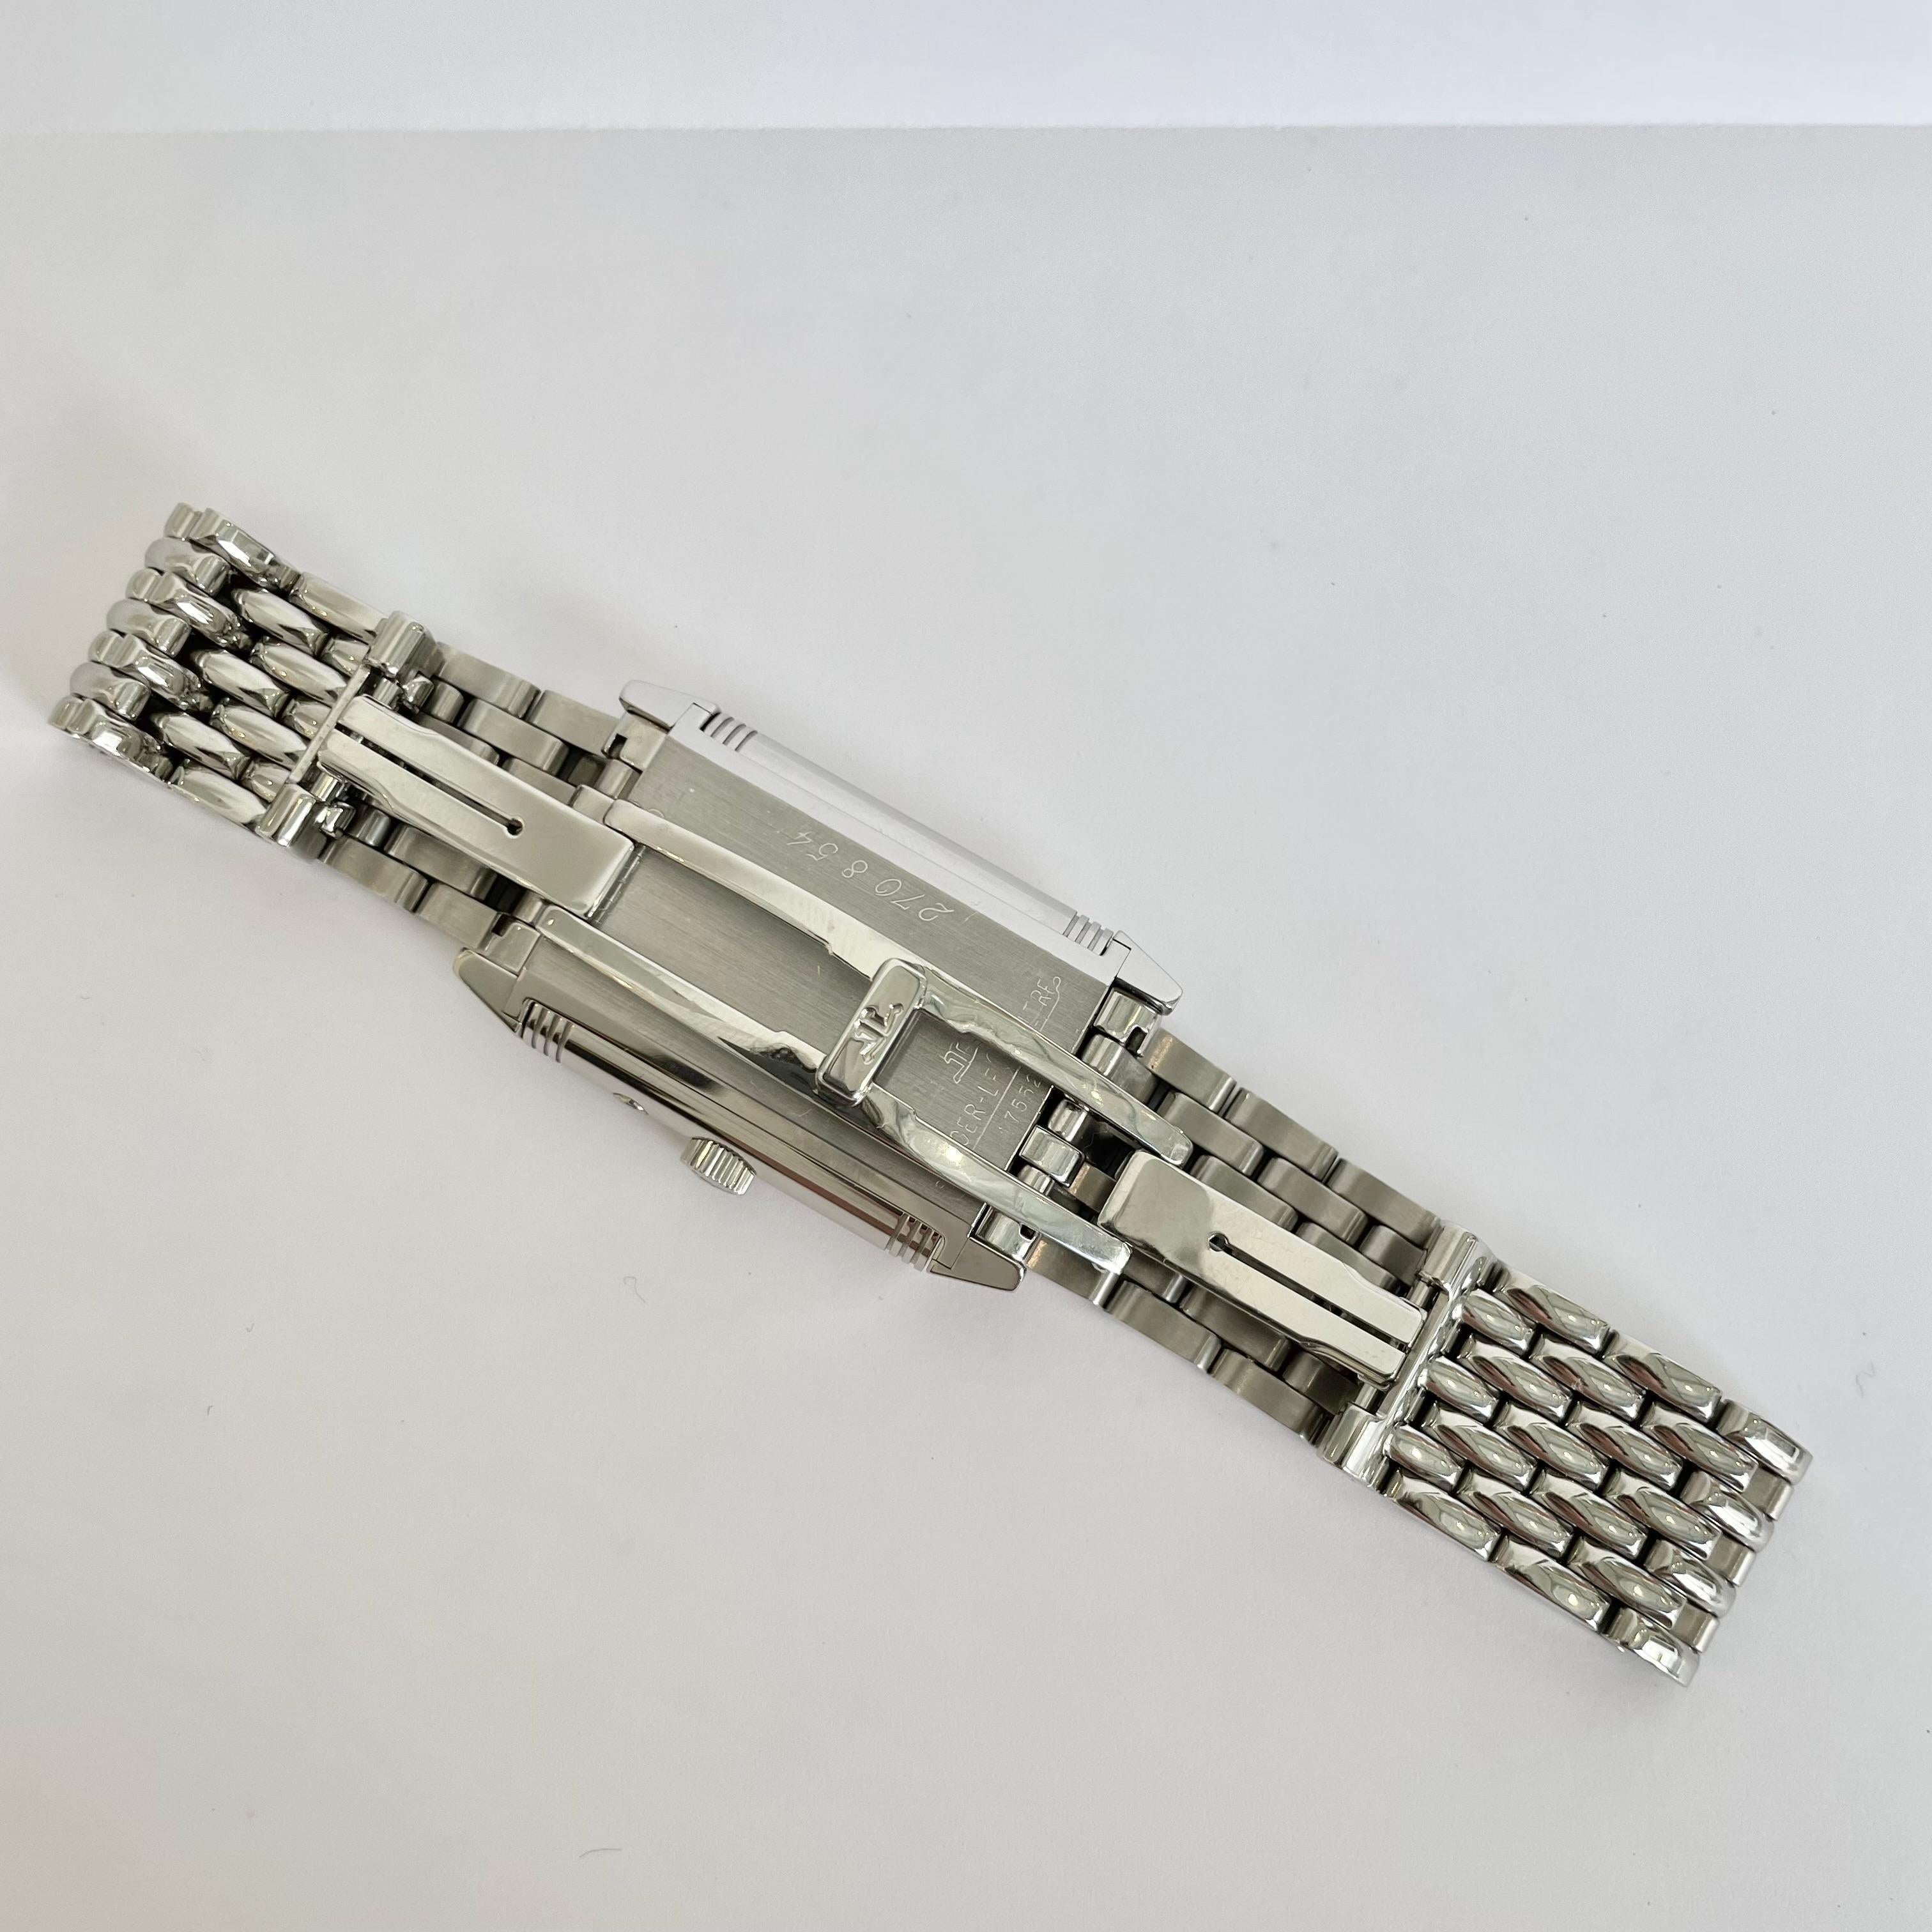 jaeger lecoultre steel bracelet